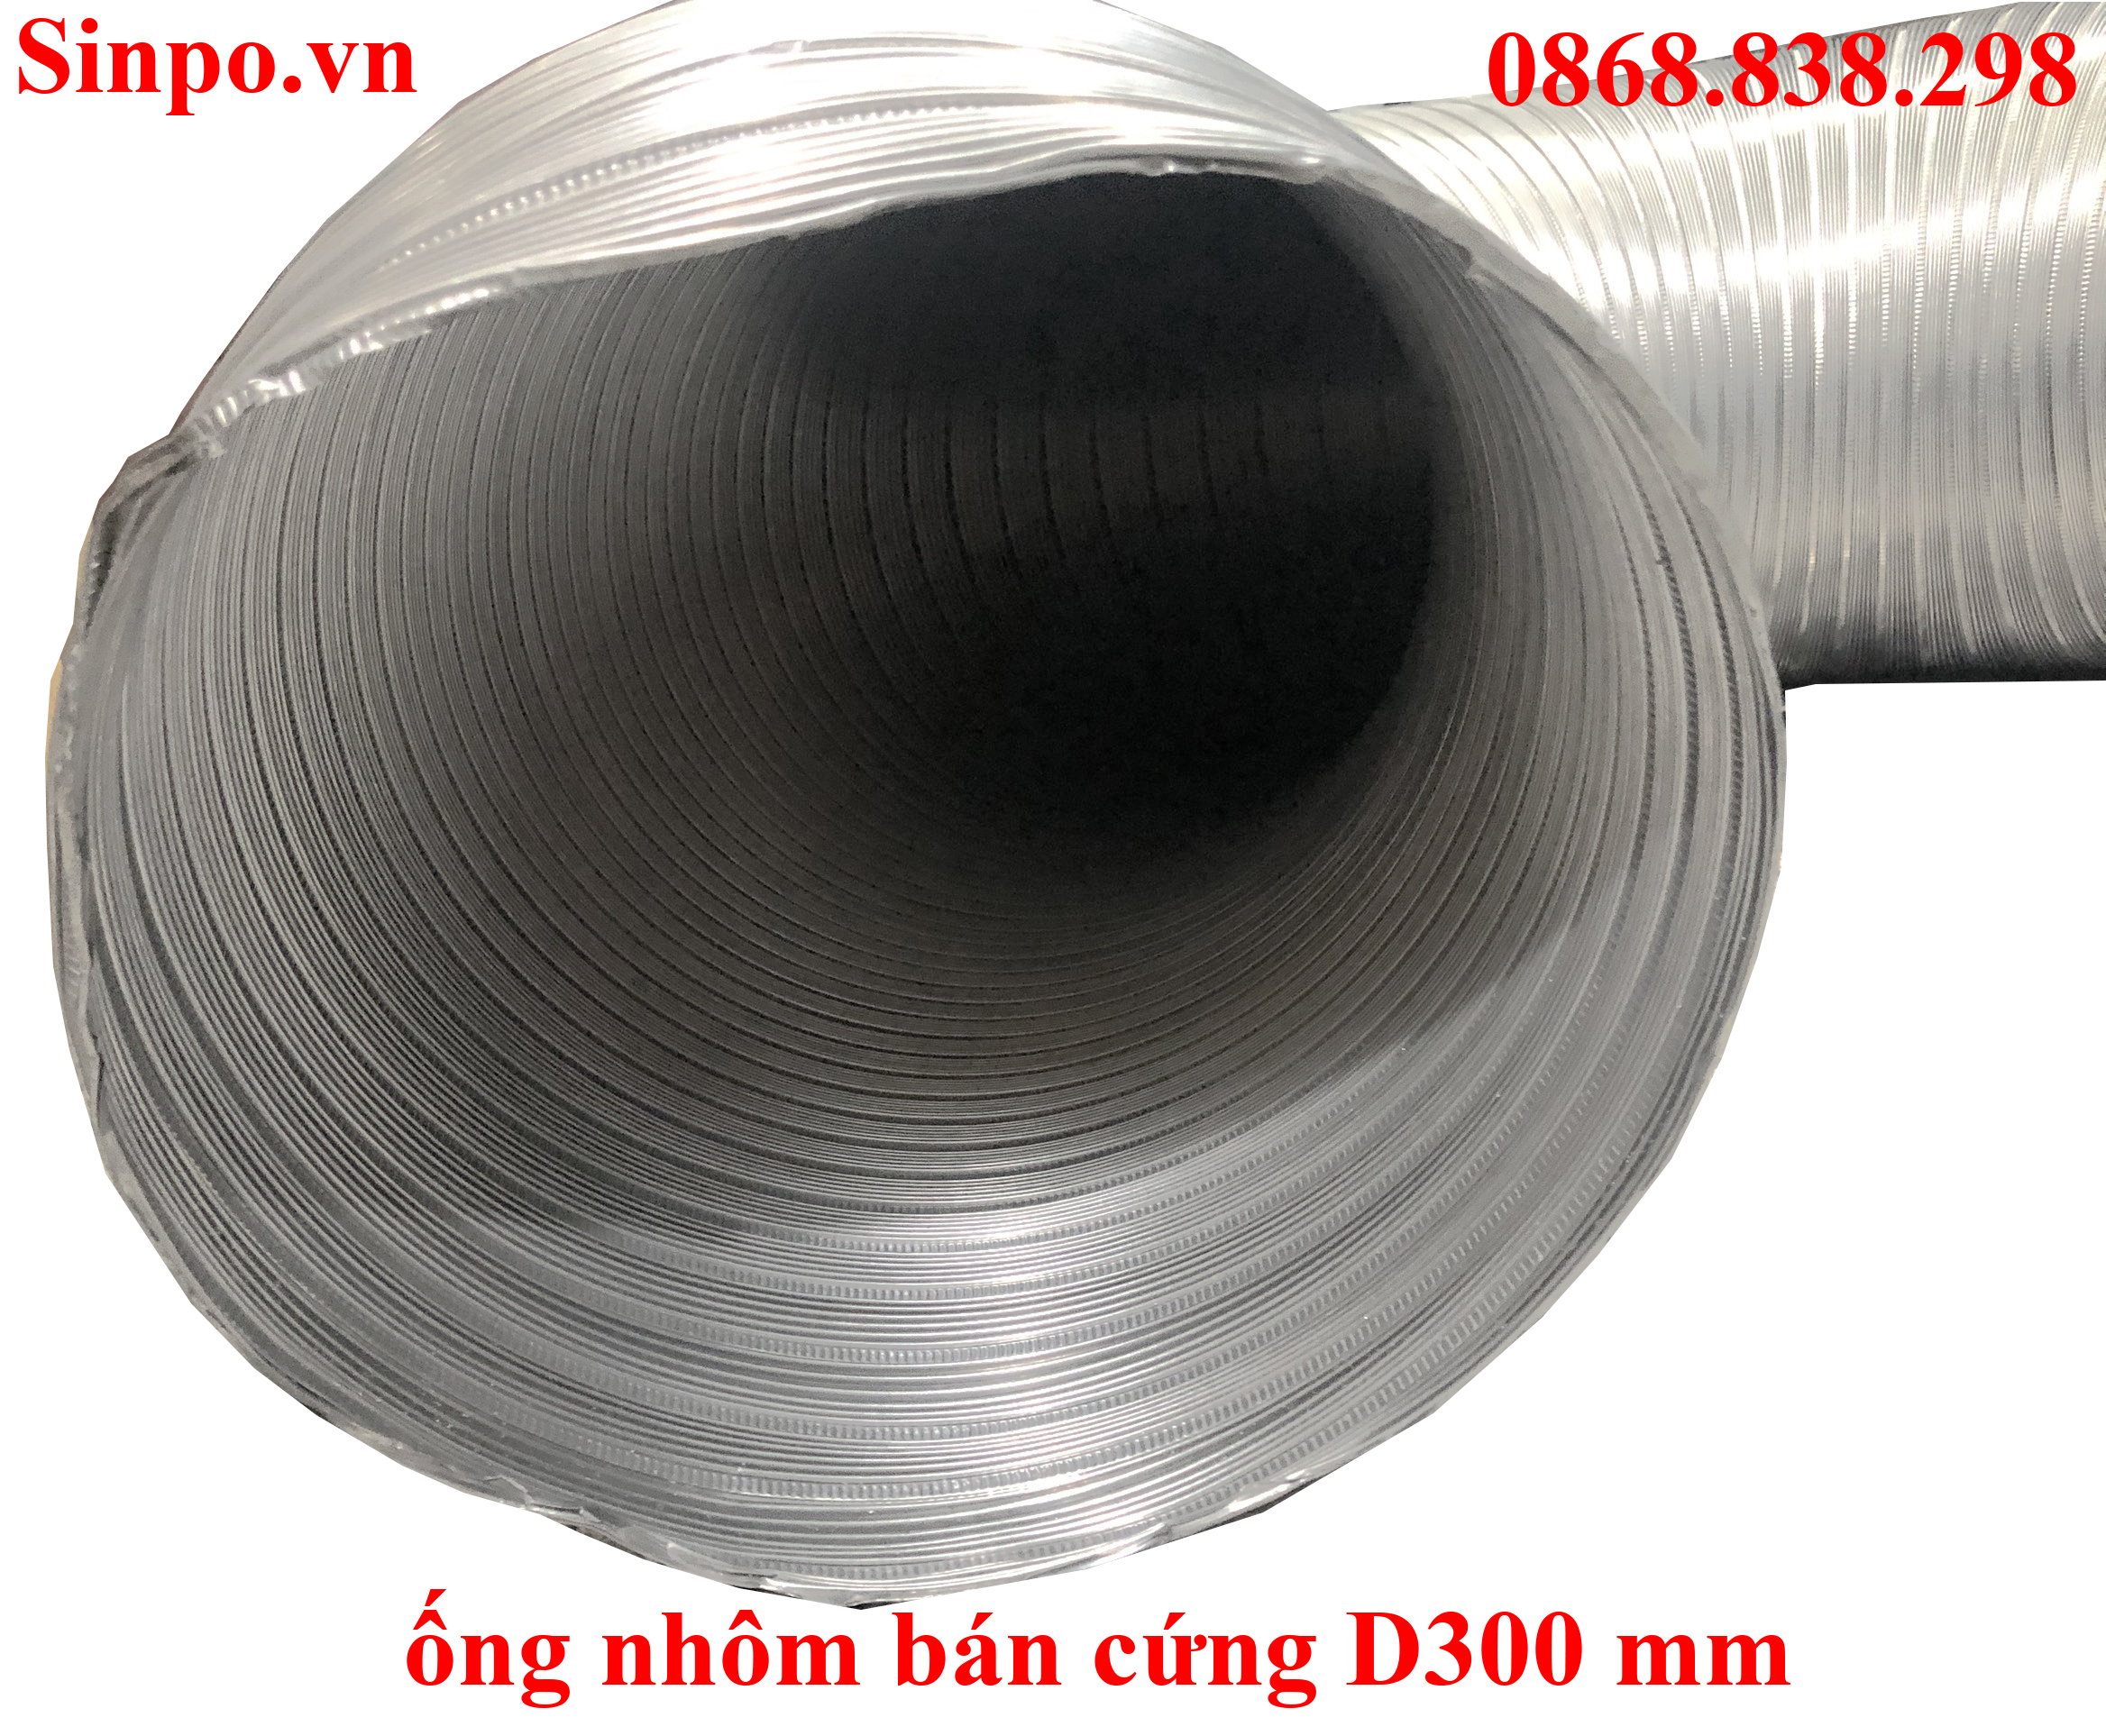 Cung cấp ống nhôm bán cứng D300 mm giá rẻ tại Hà Nội